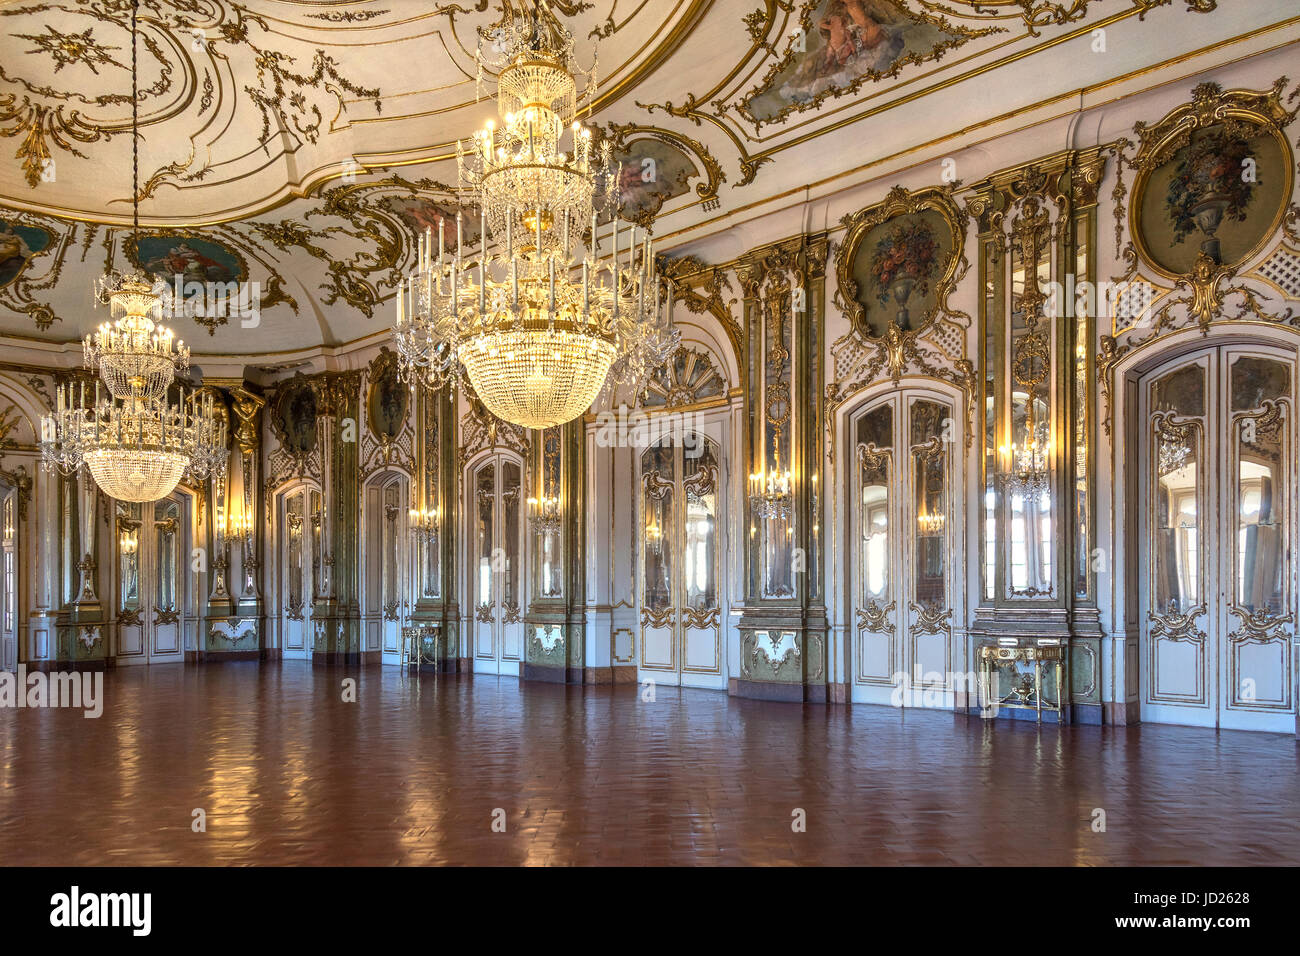 Der Ballsaal im nationalen Palast von Queluz - Lissabon - Portugal. Es wurde im Jahre 1760 von Robillon entworfen. Stockfoto